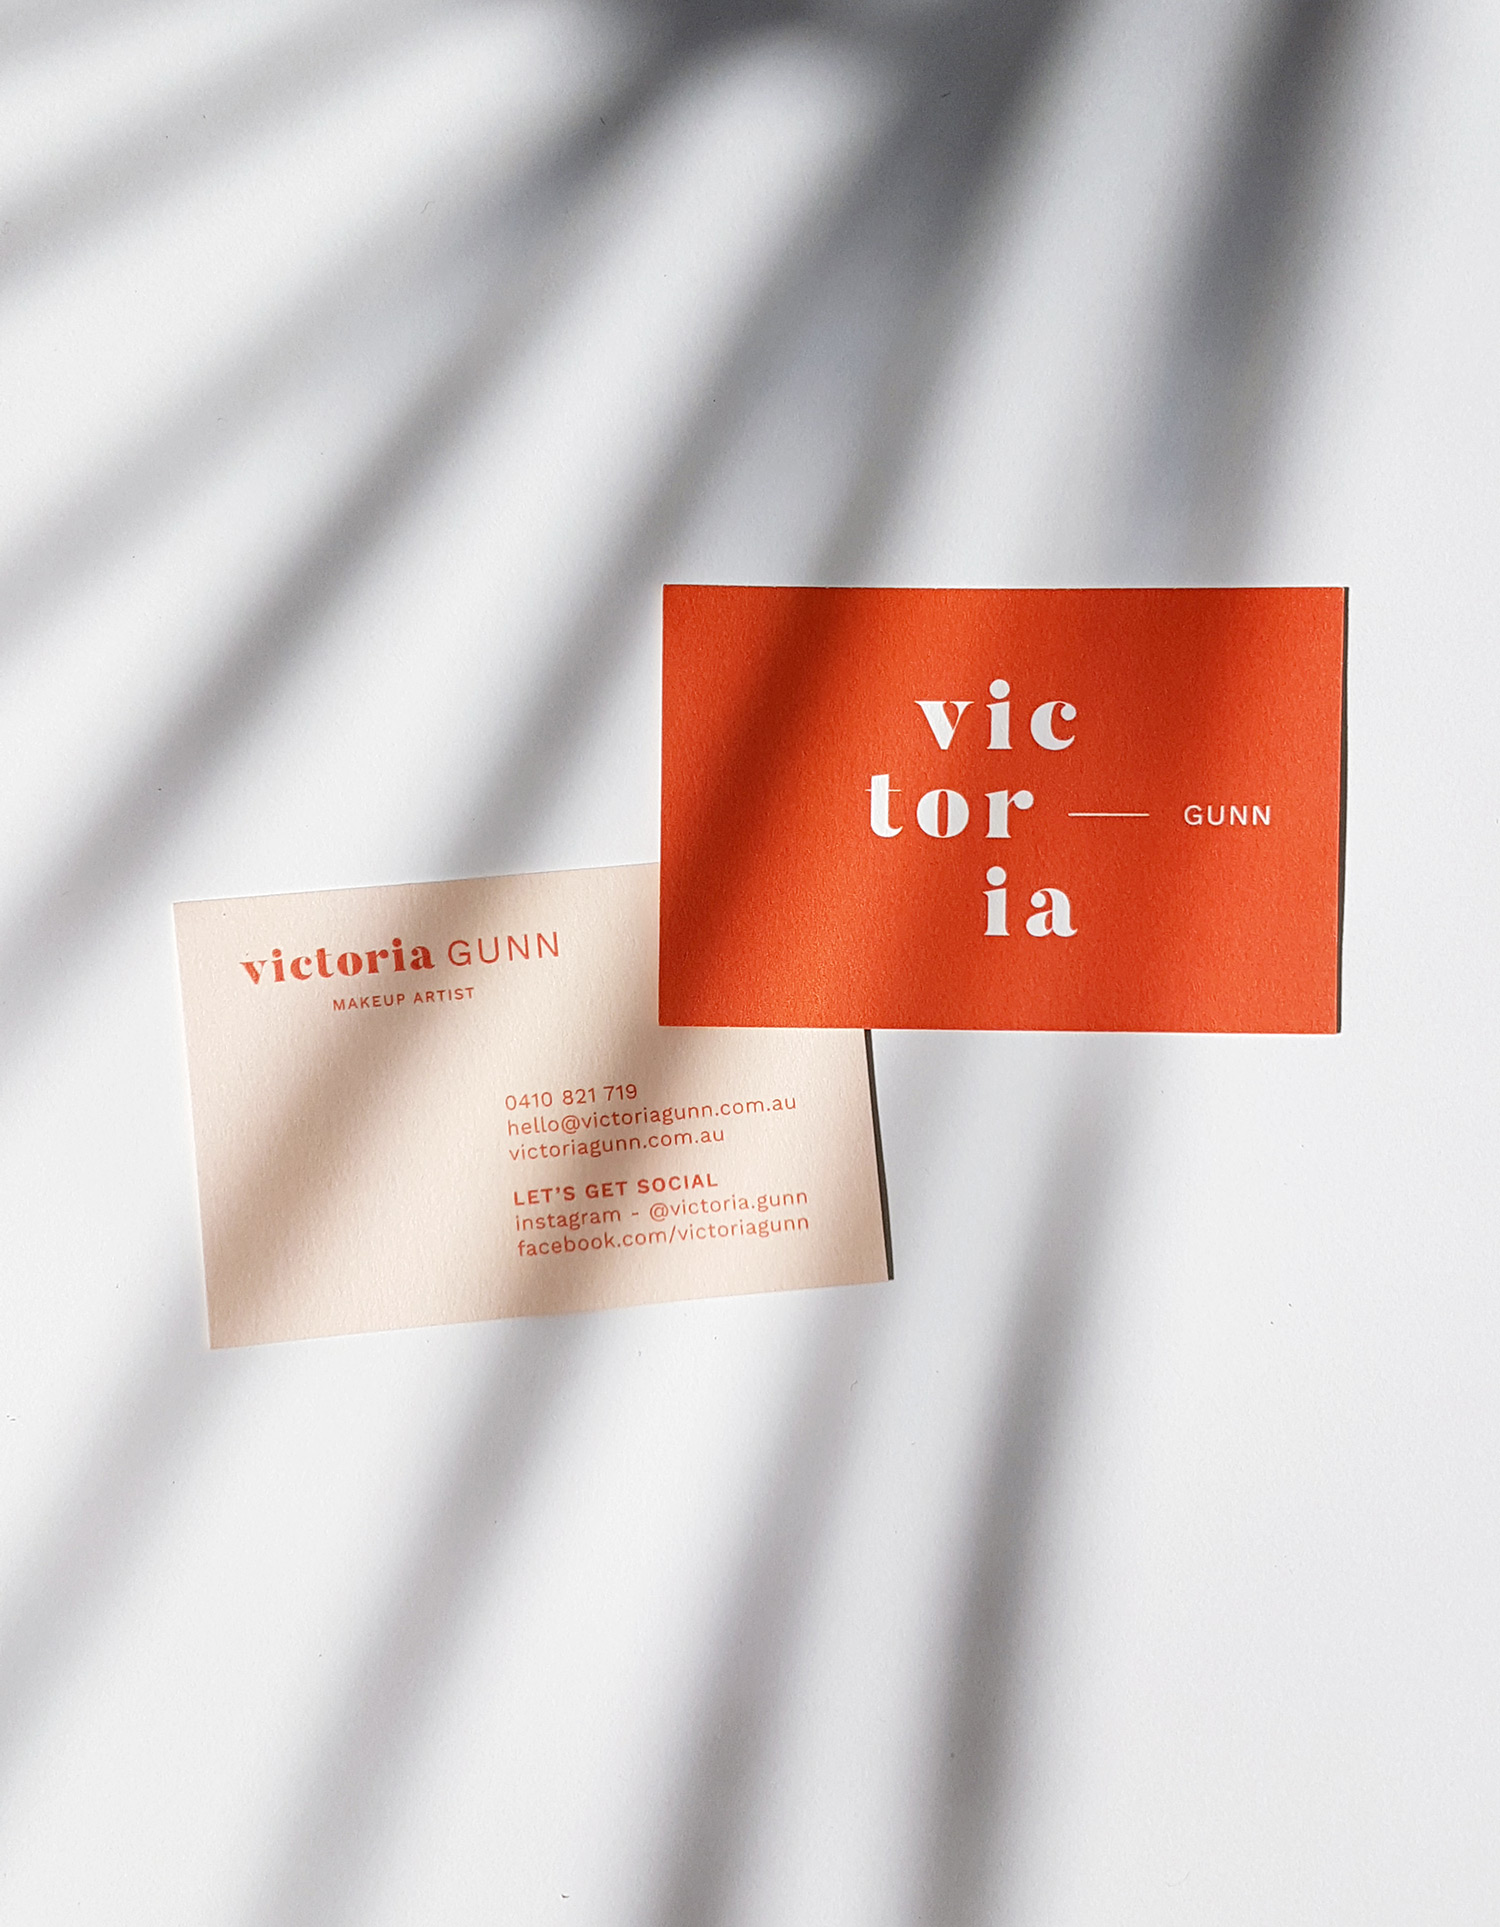 Business Card Design for Victoria Gunn Makeup Artist